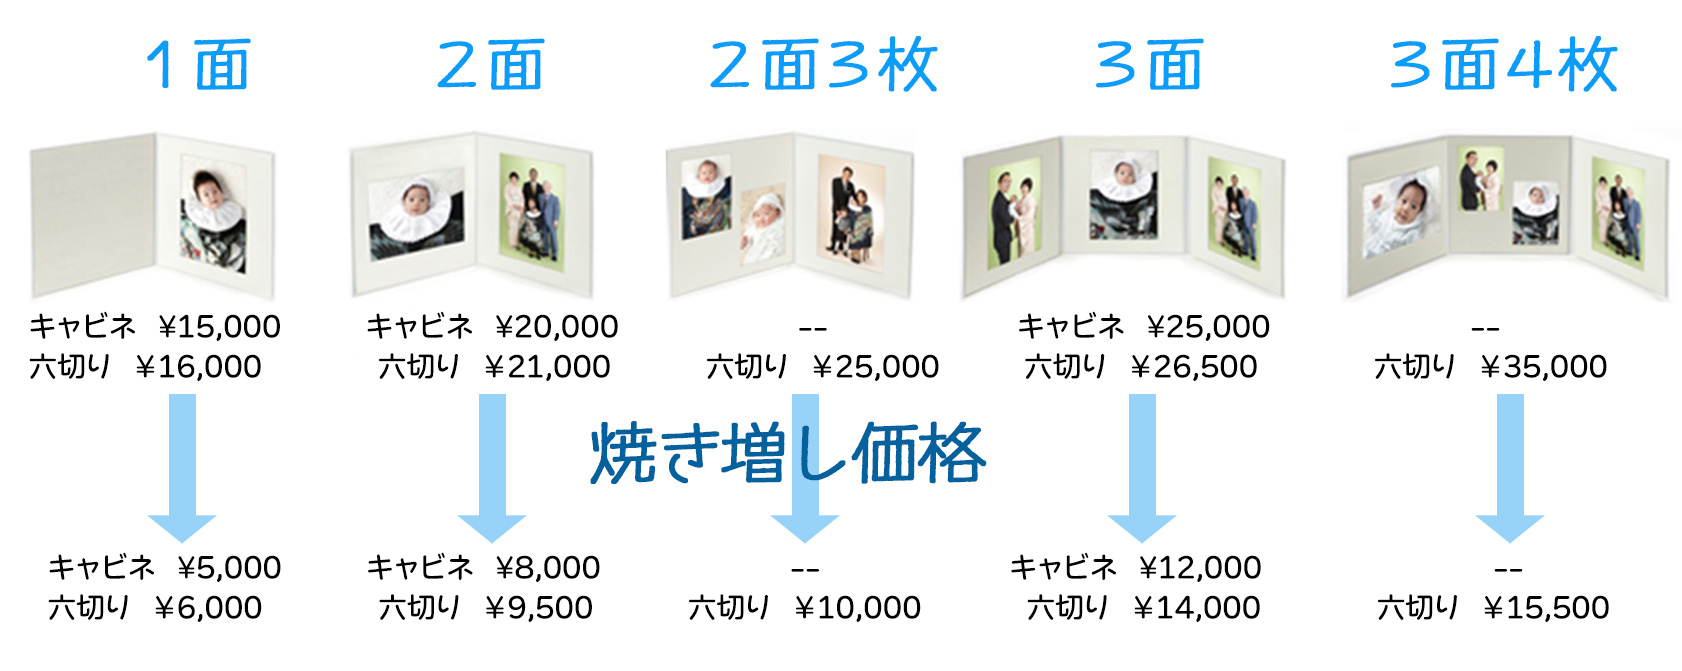 お宮参り写真　台紙入り写真コース、昔ながらの台紙に入れた写真が欲しい方にお勧めです。¥15,000〜